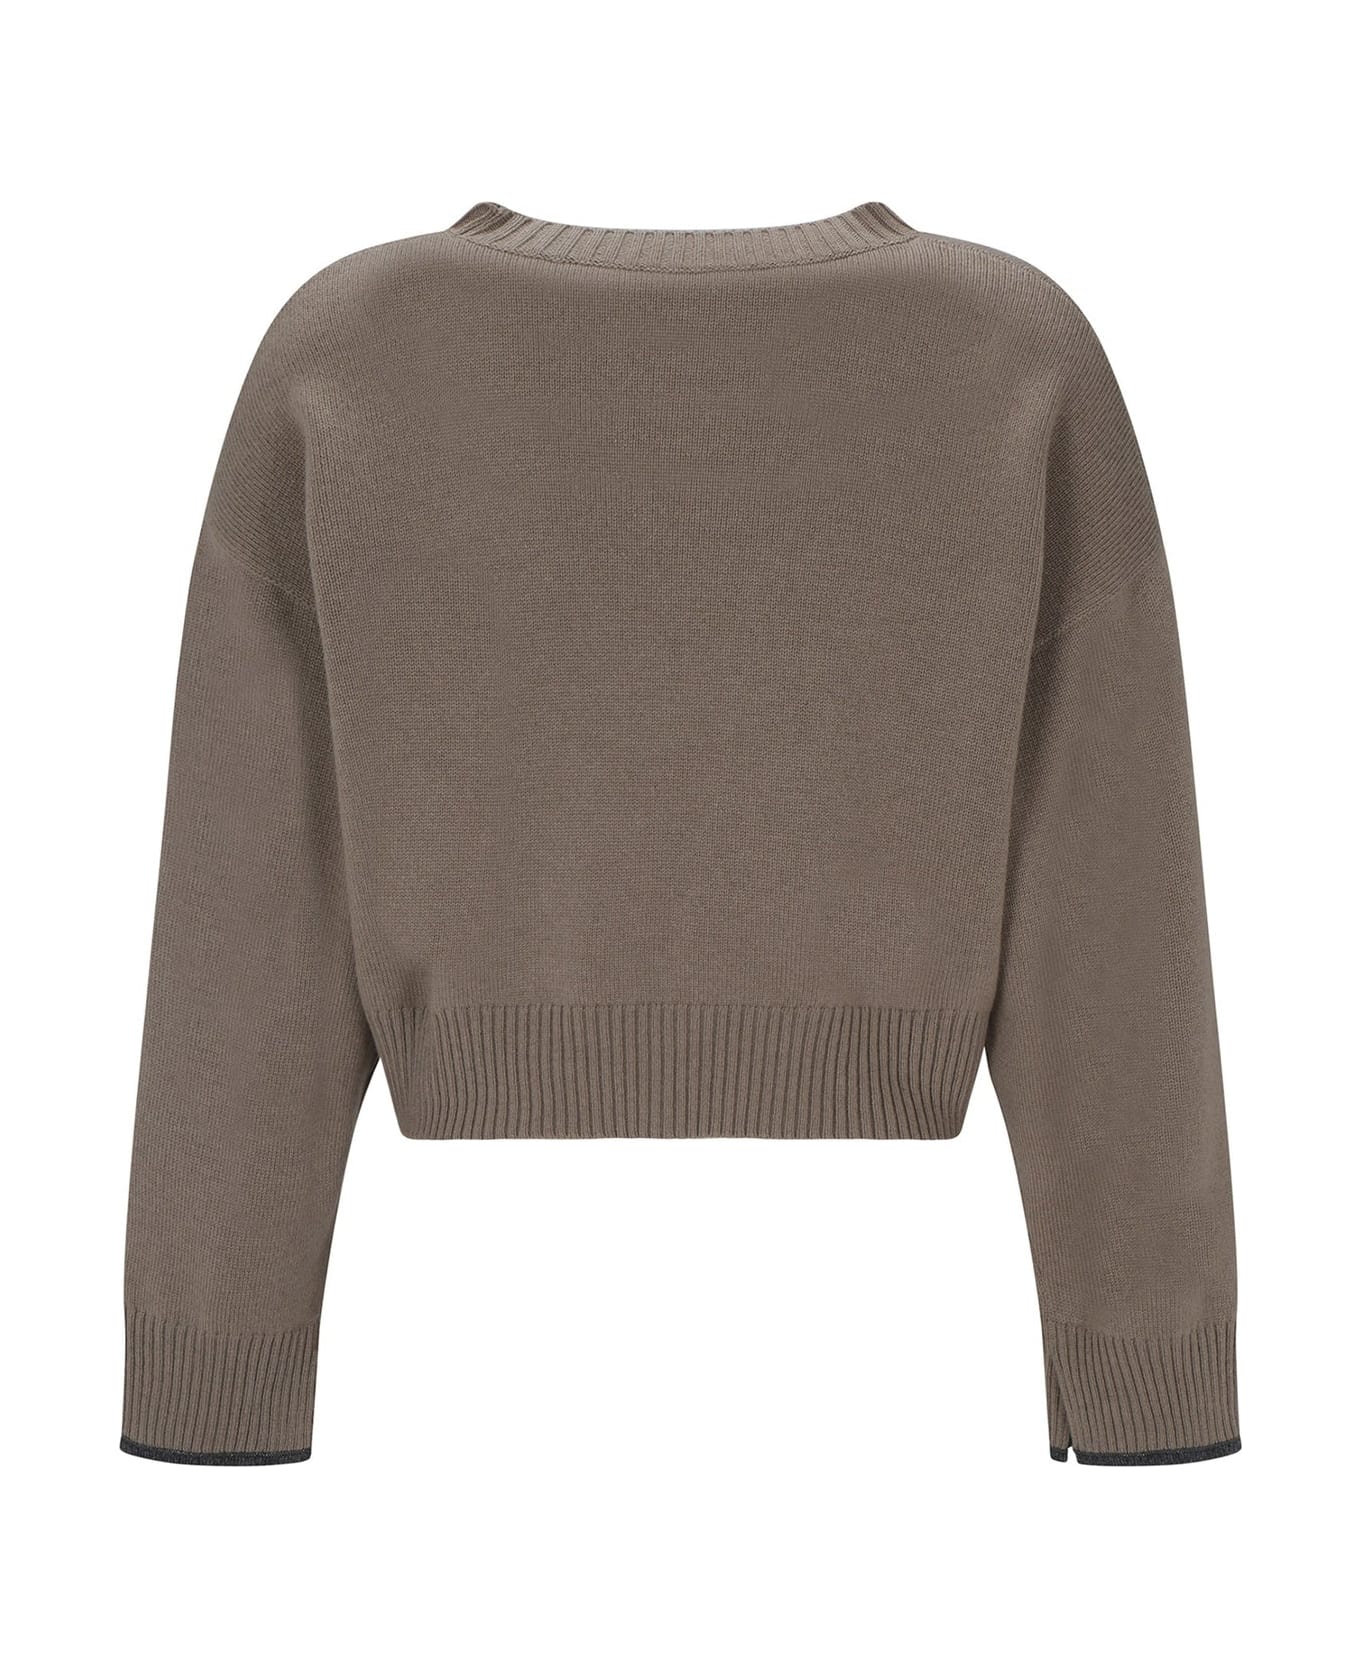 Brunello Cucinelli Cashmere Sweater - Beige ニットウェア